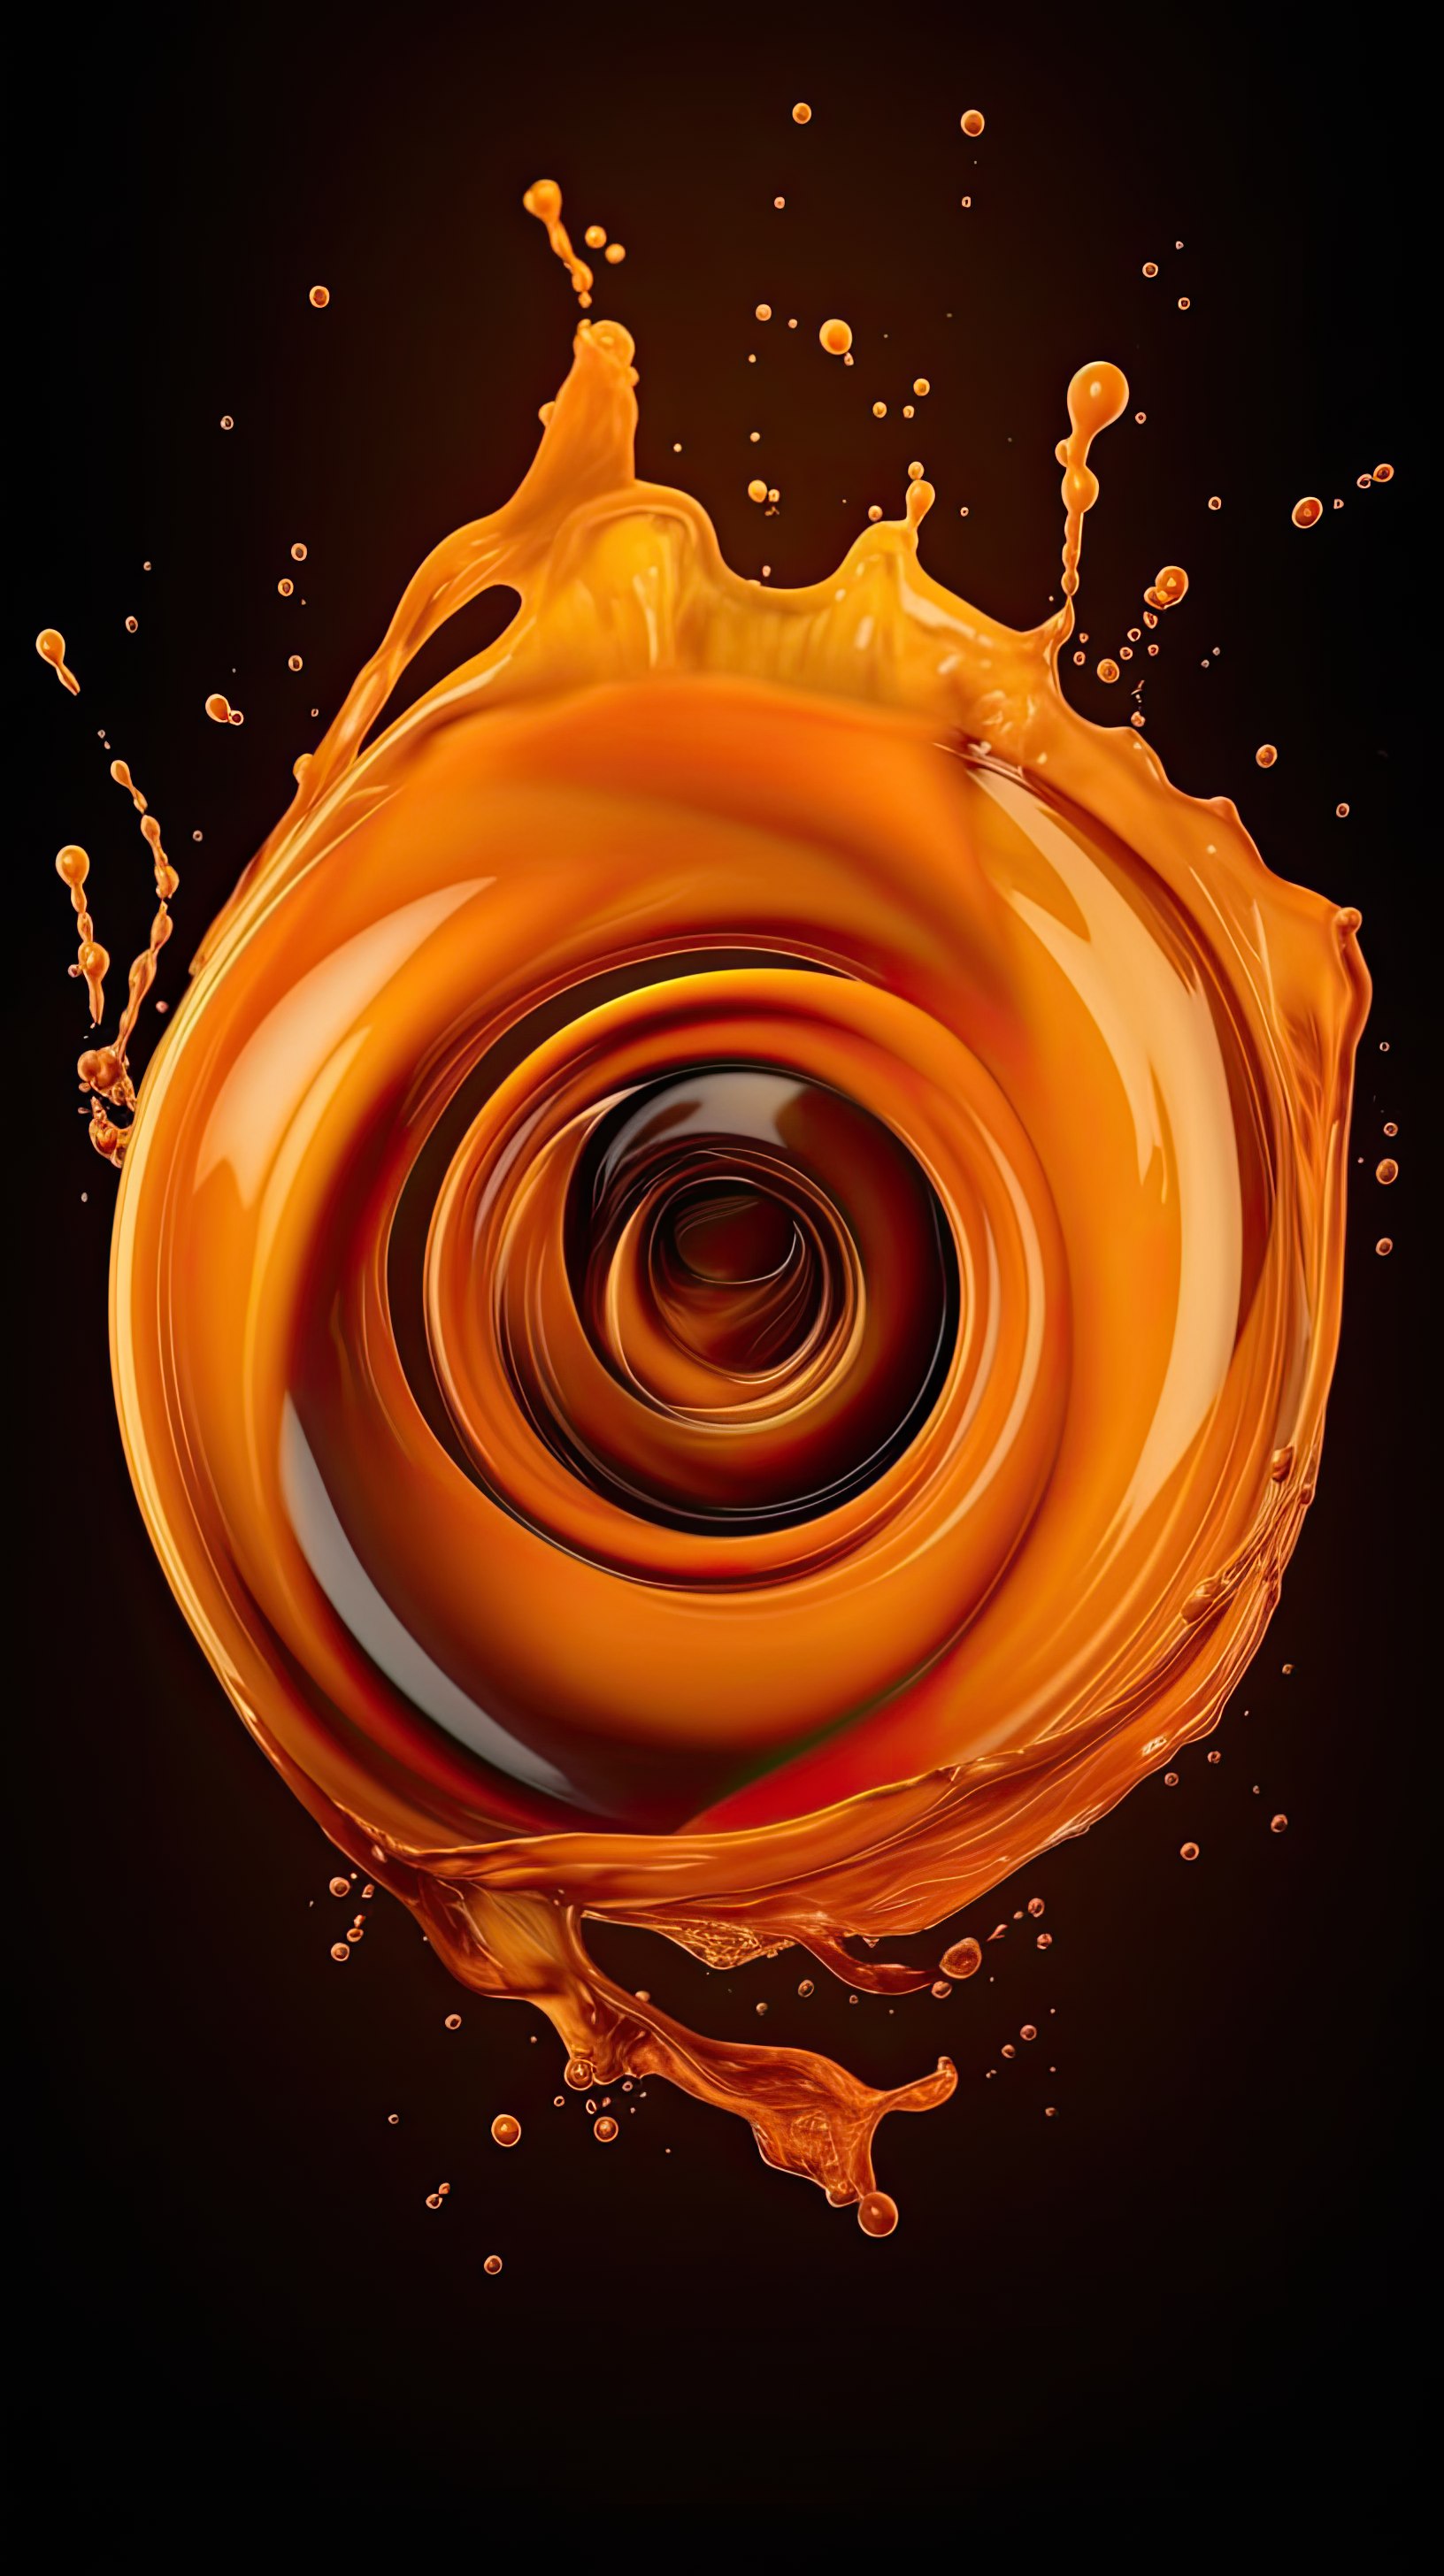 Orange liquid swirling on dark background